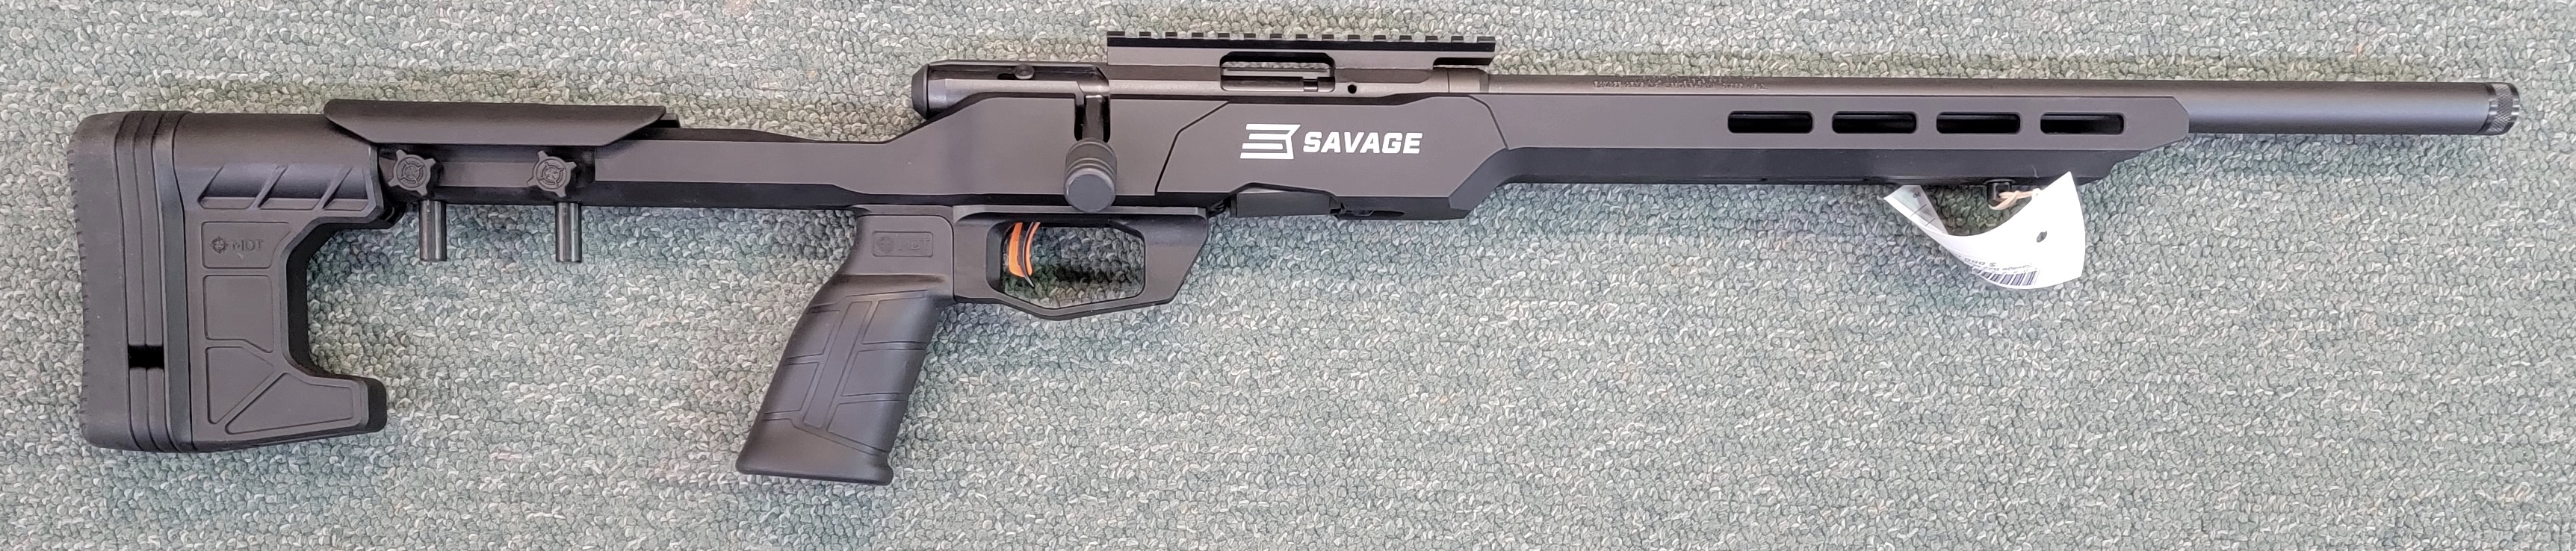 Savage B22 Magnum Precision